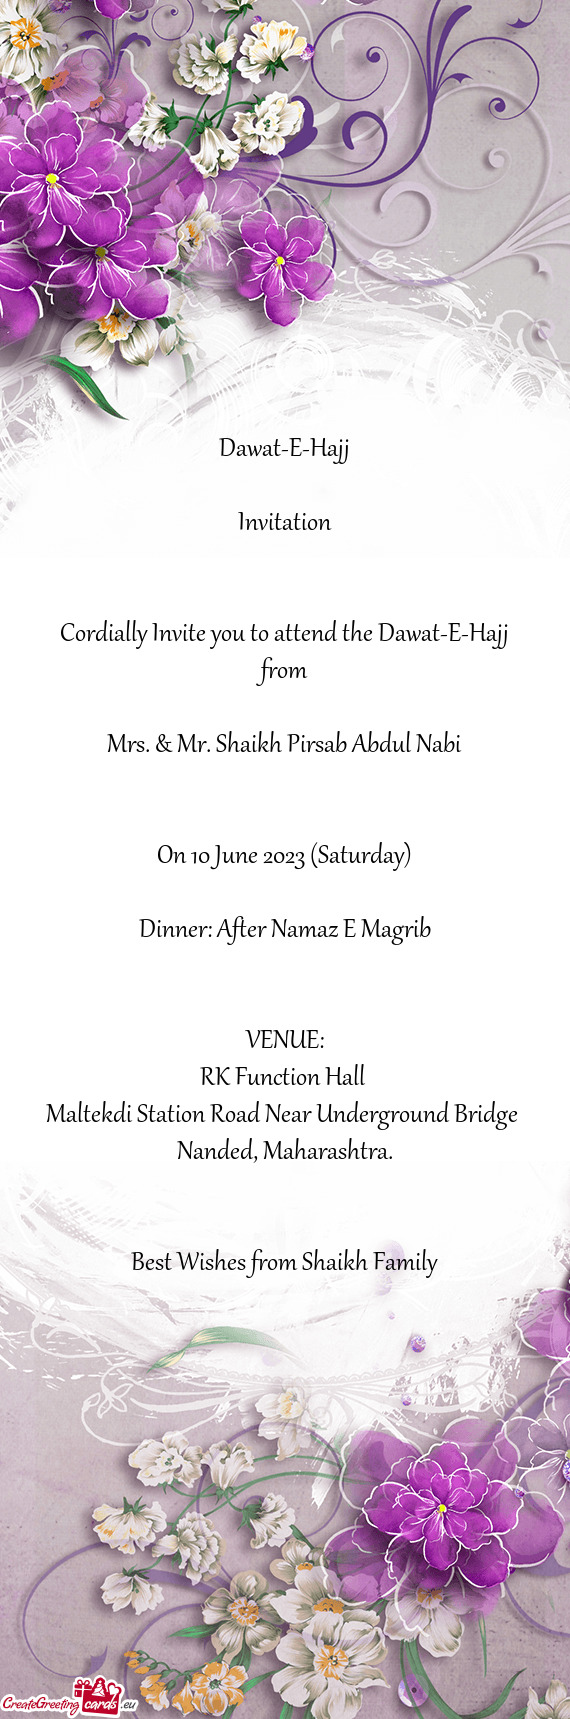 Mrs. & Mr. Shaikh Pirsab Abdul Nabi